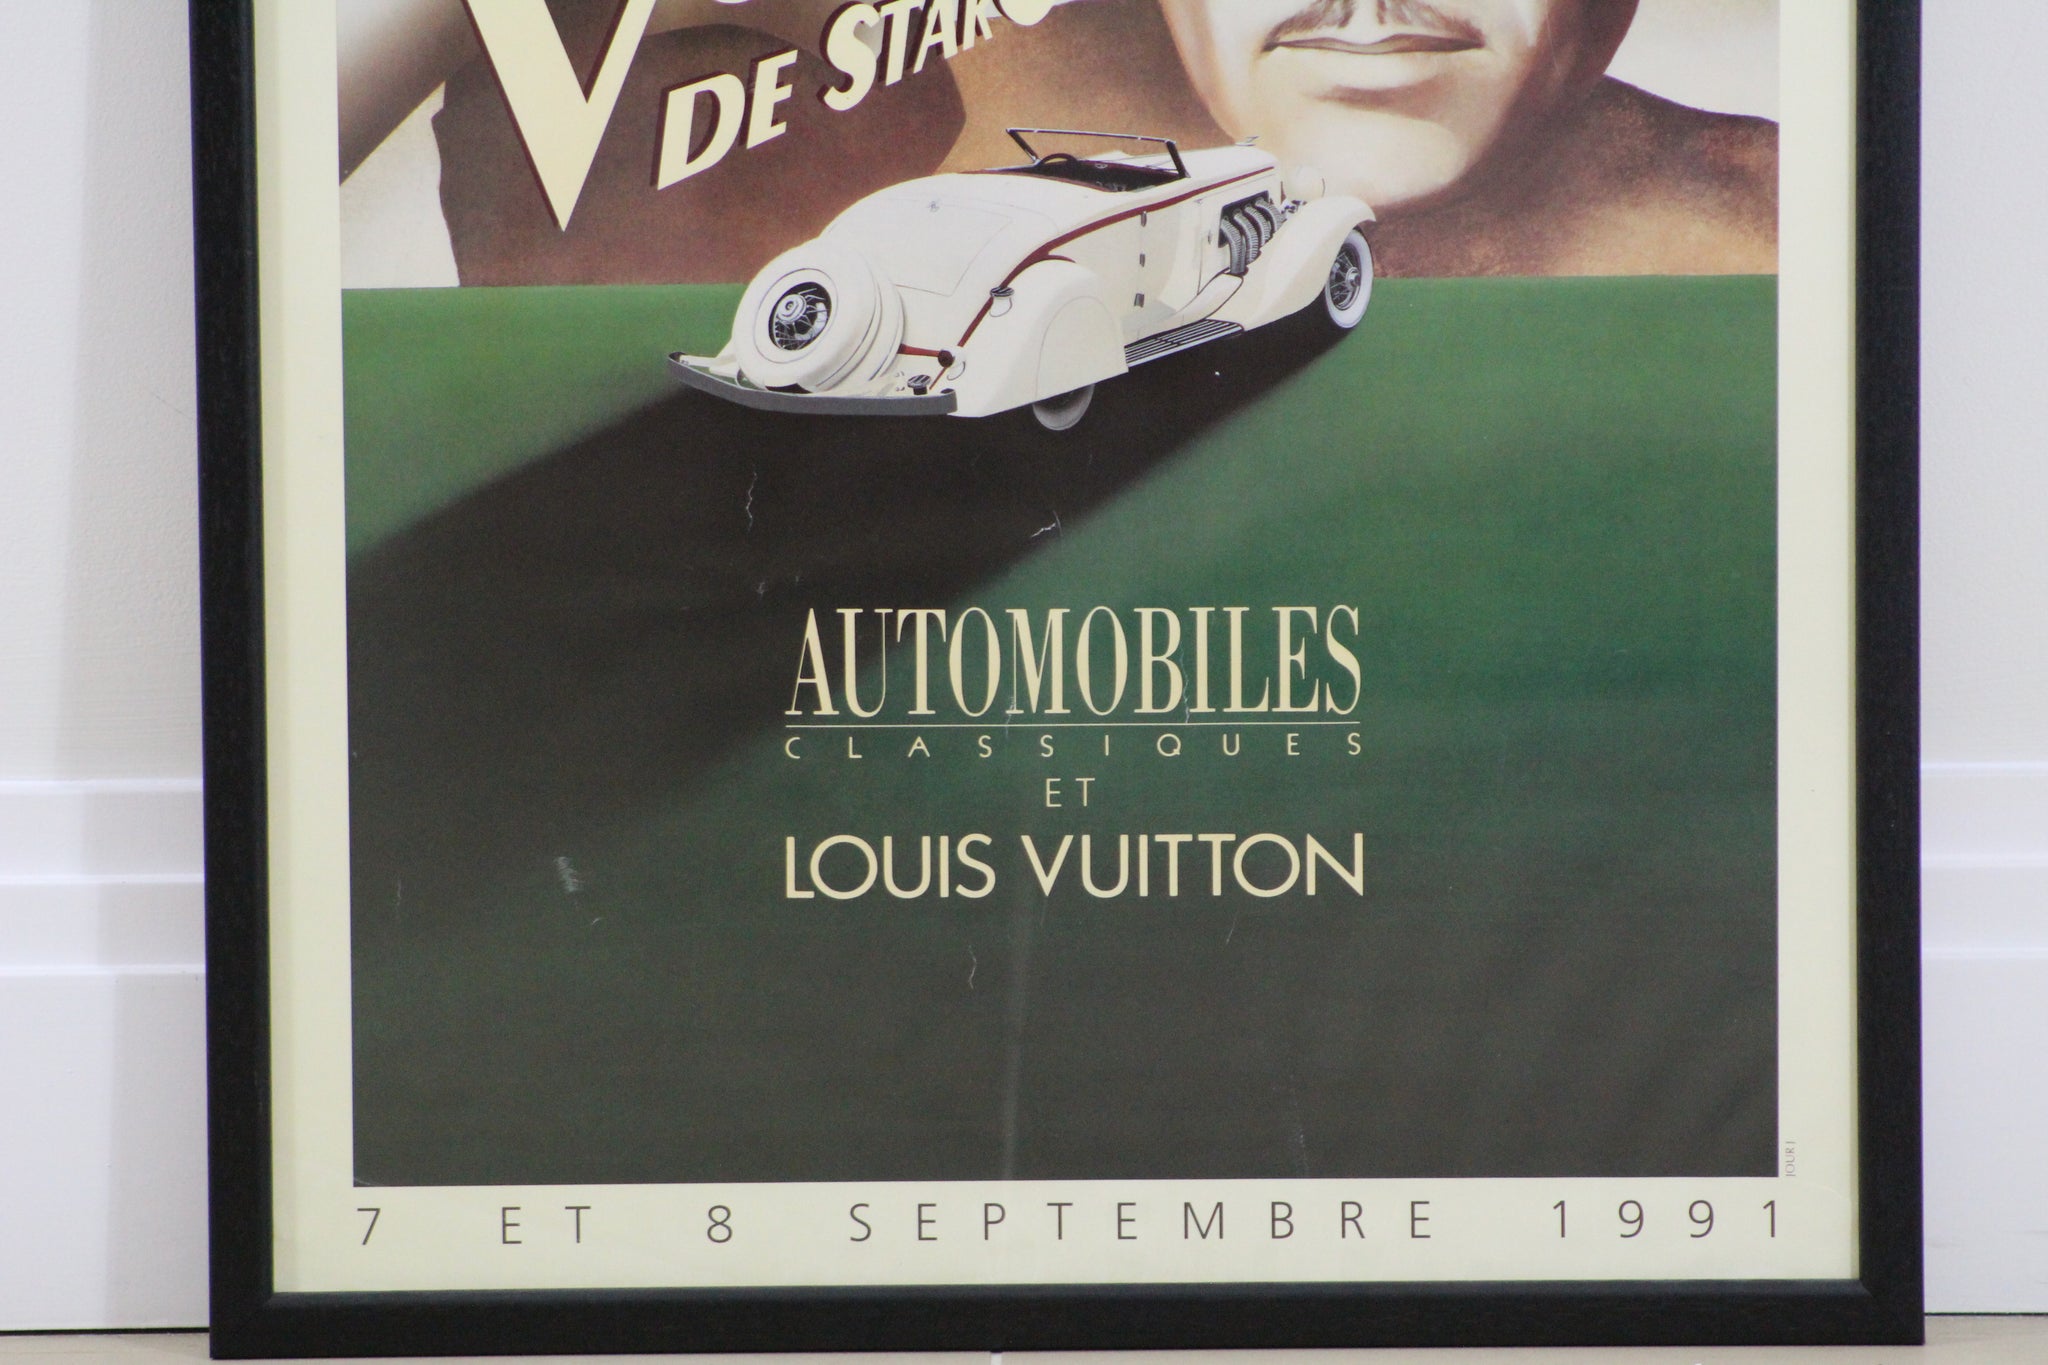 Original Vintage Poster Parc De Bagatelle LOUIS VUITTON 